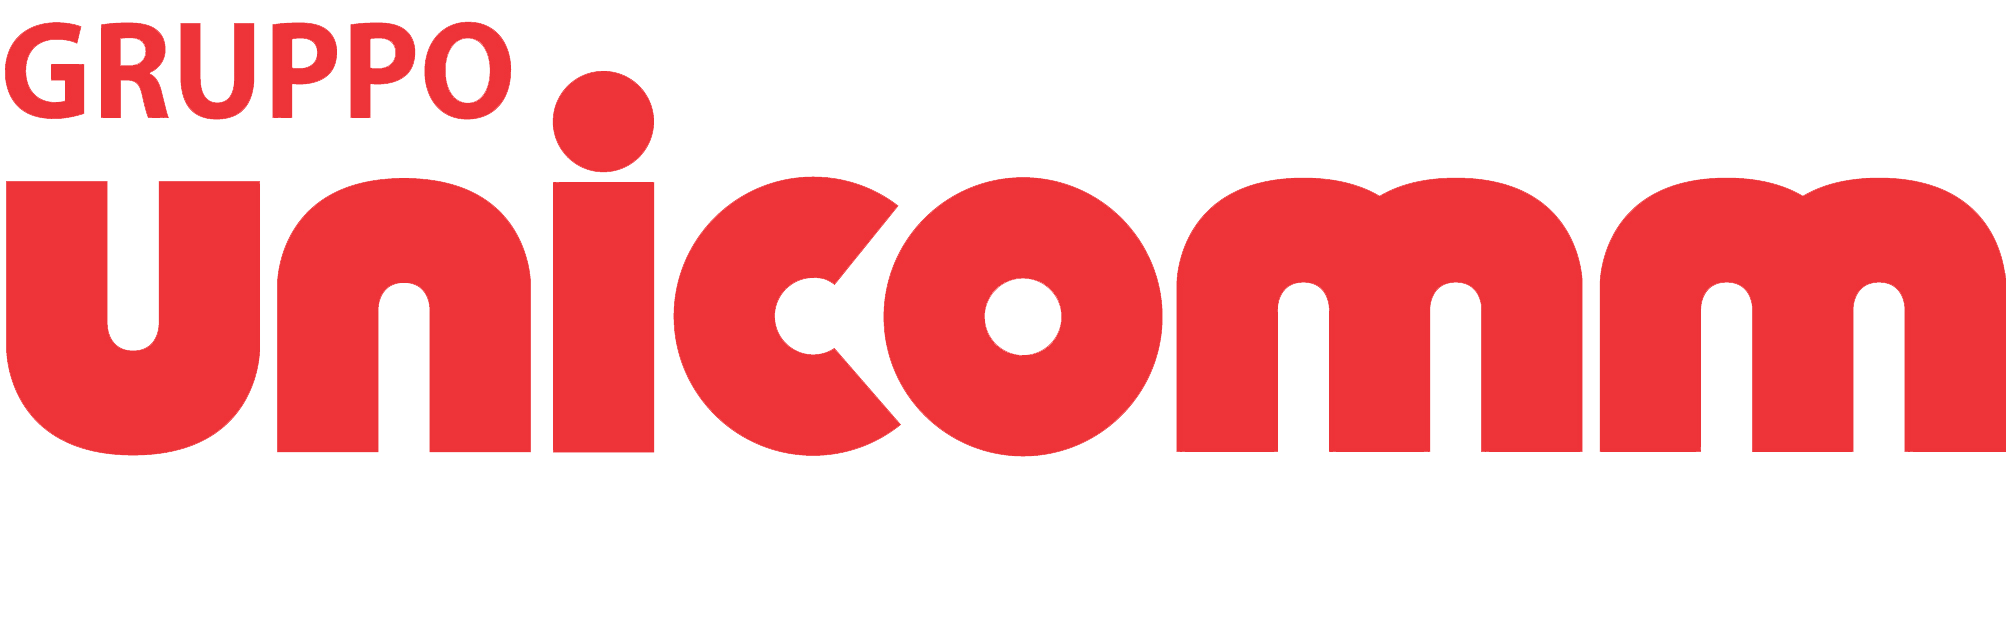 gruppo-unicomm-logo-aton